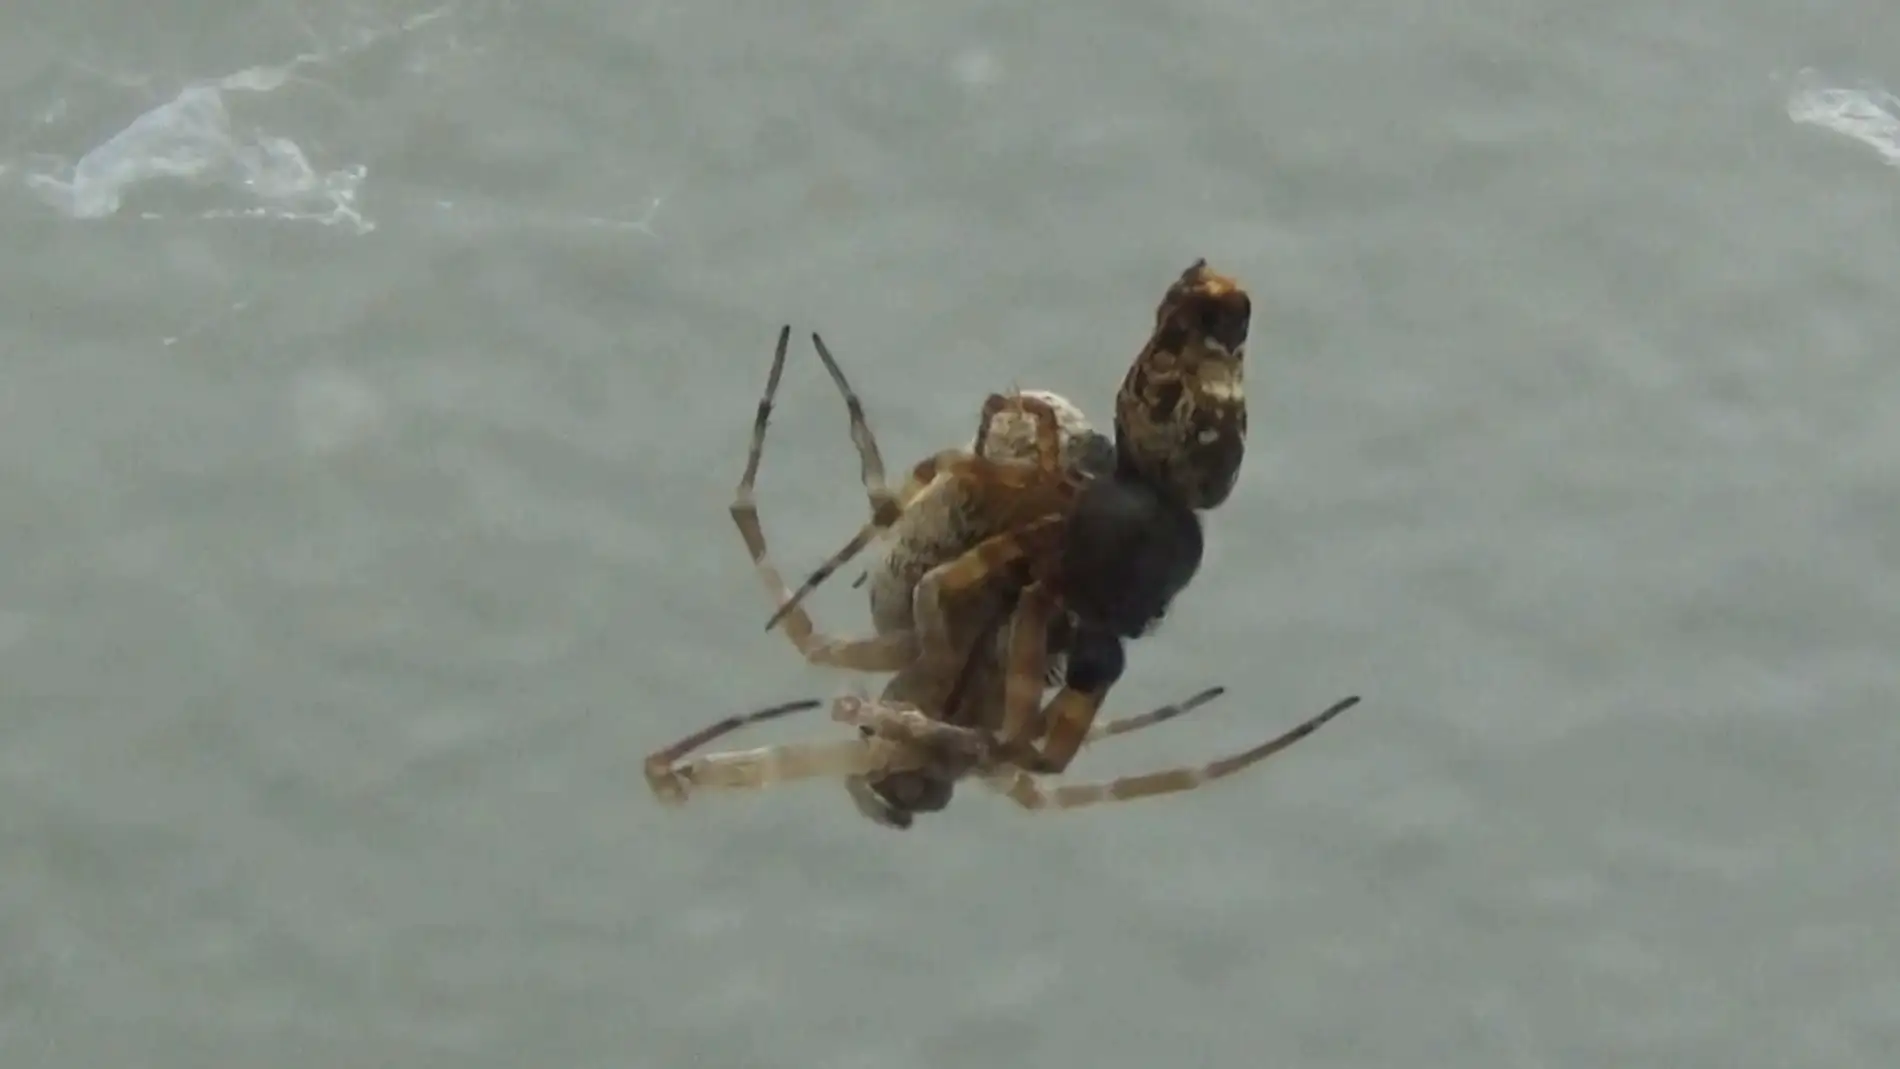 Dos arañas de la especie Philoponella prominens apareándose